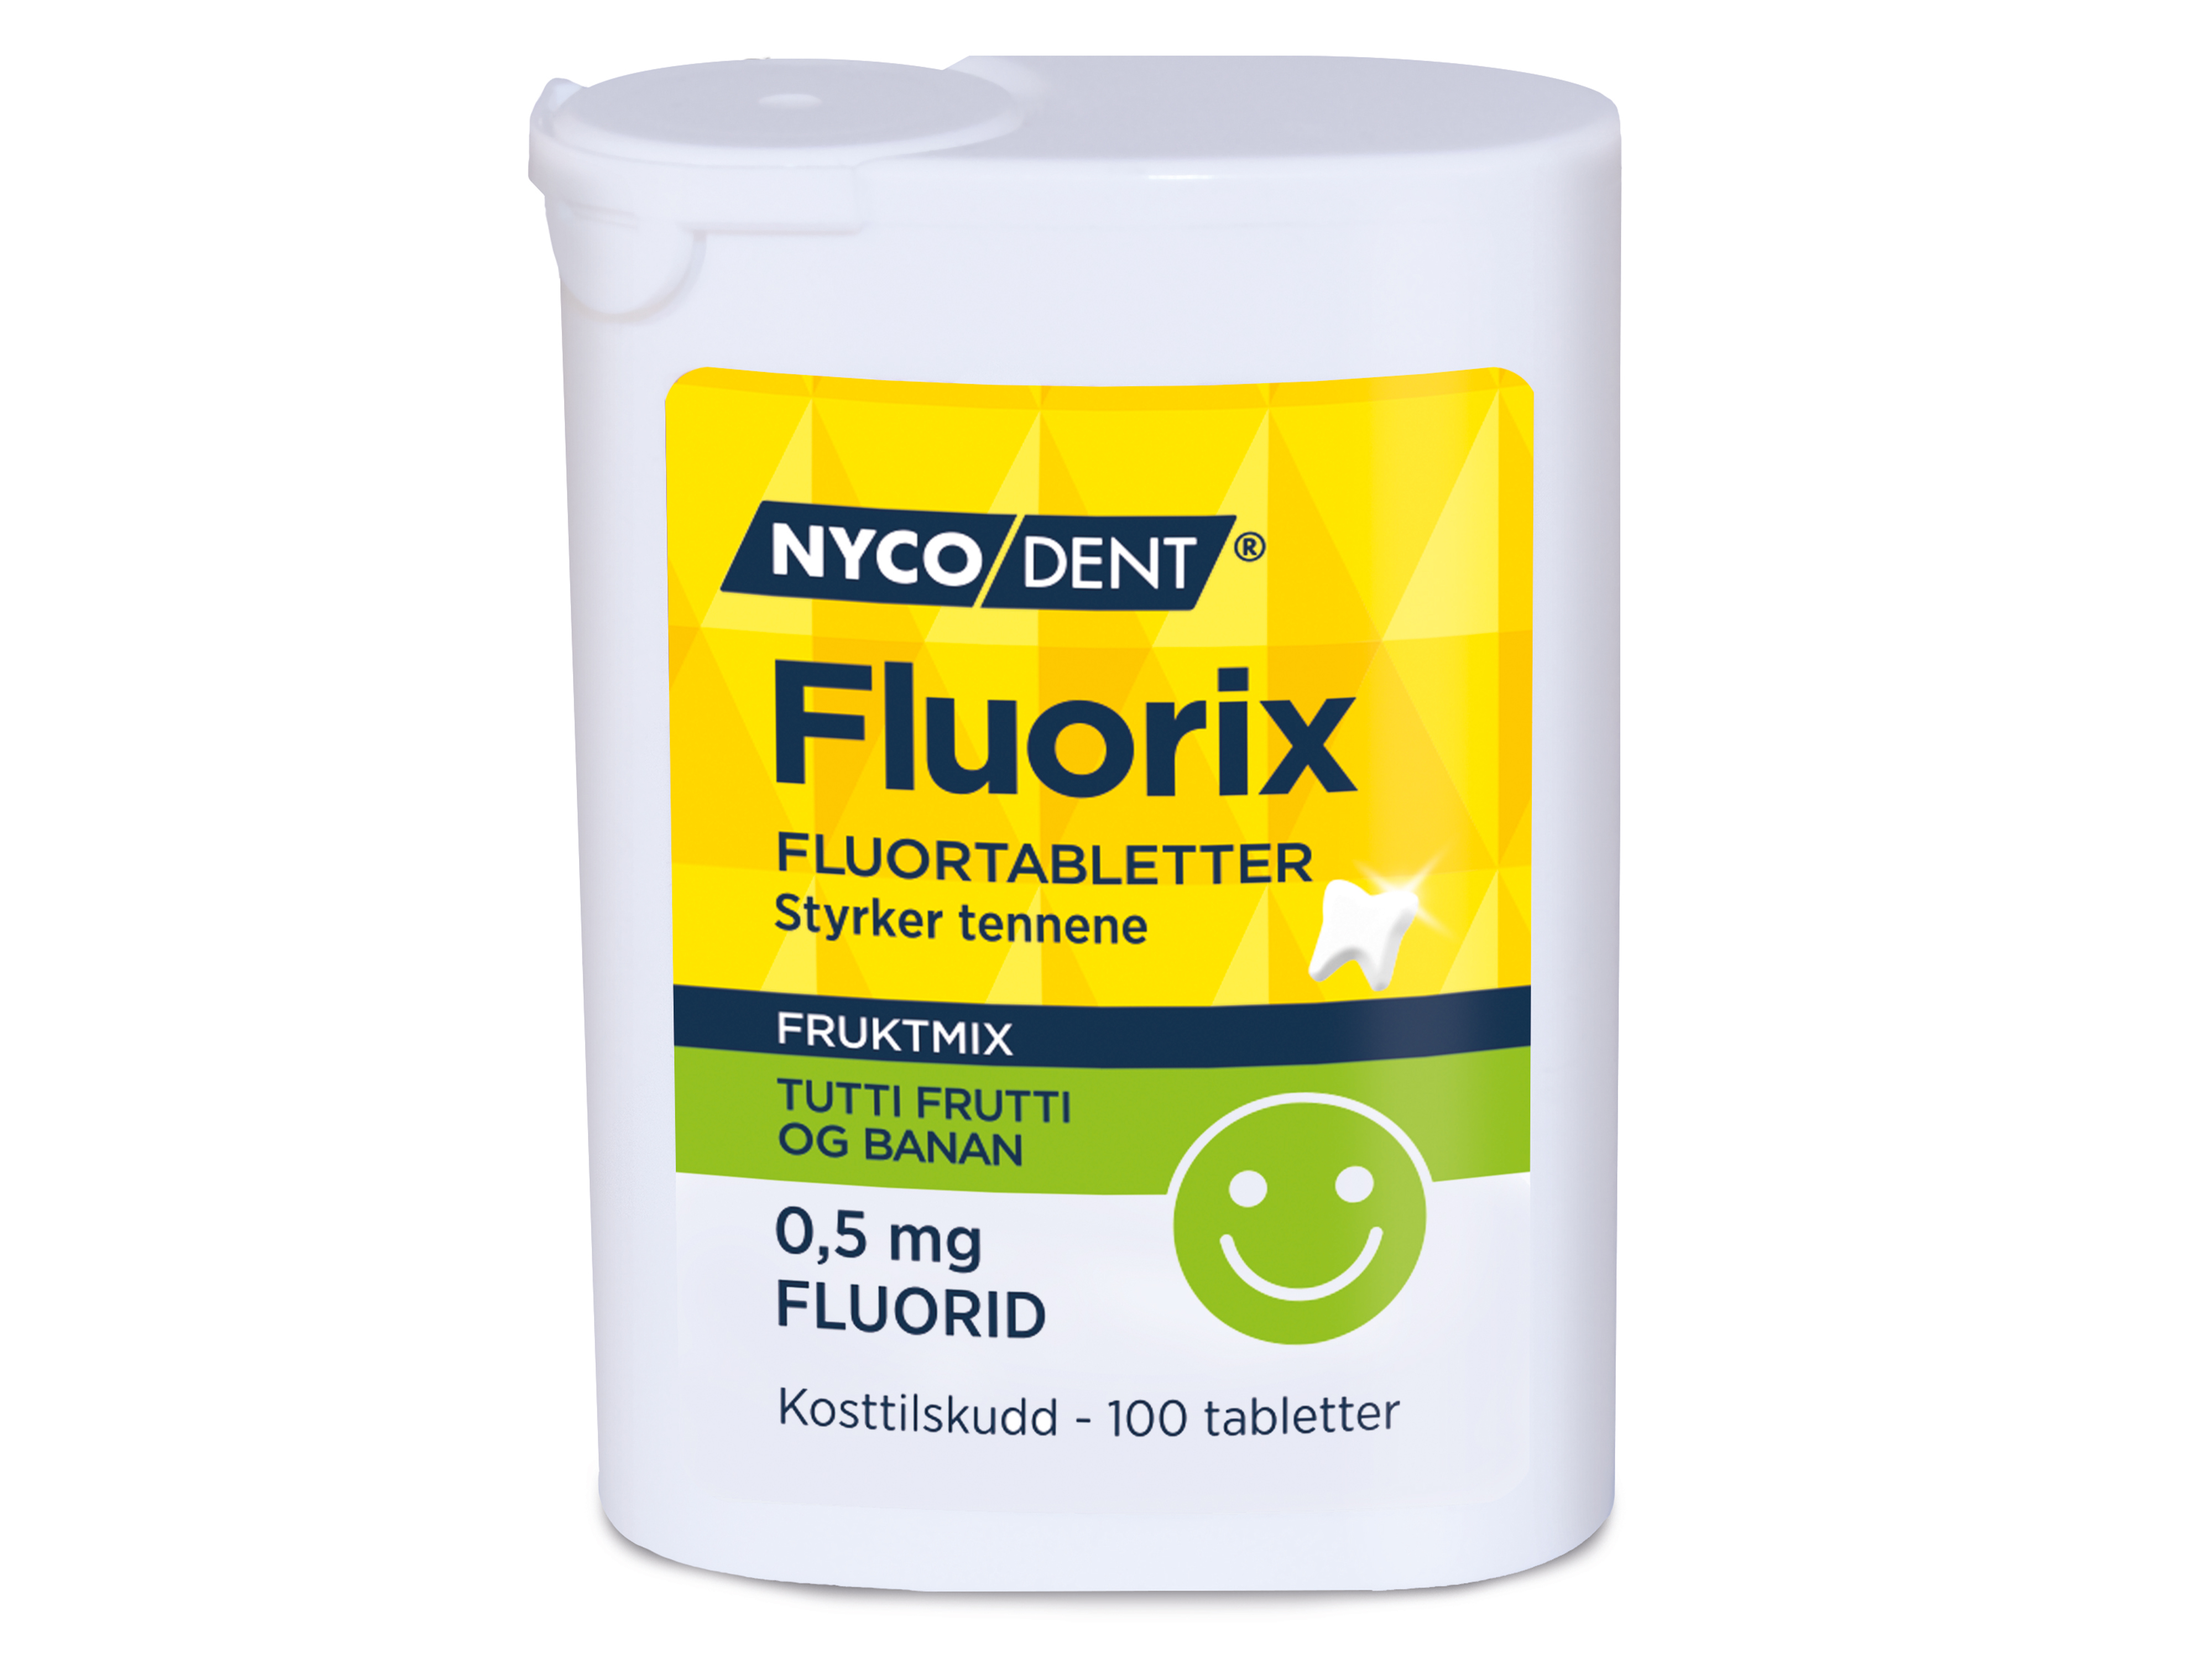 Nycodent Nycodent Fluorix m/Tuttifrutti&Banan 0,5 mg, 100 stk